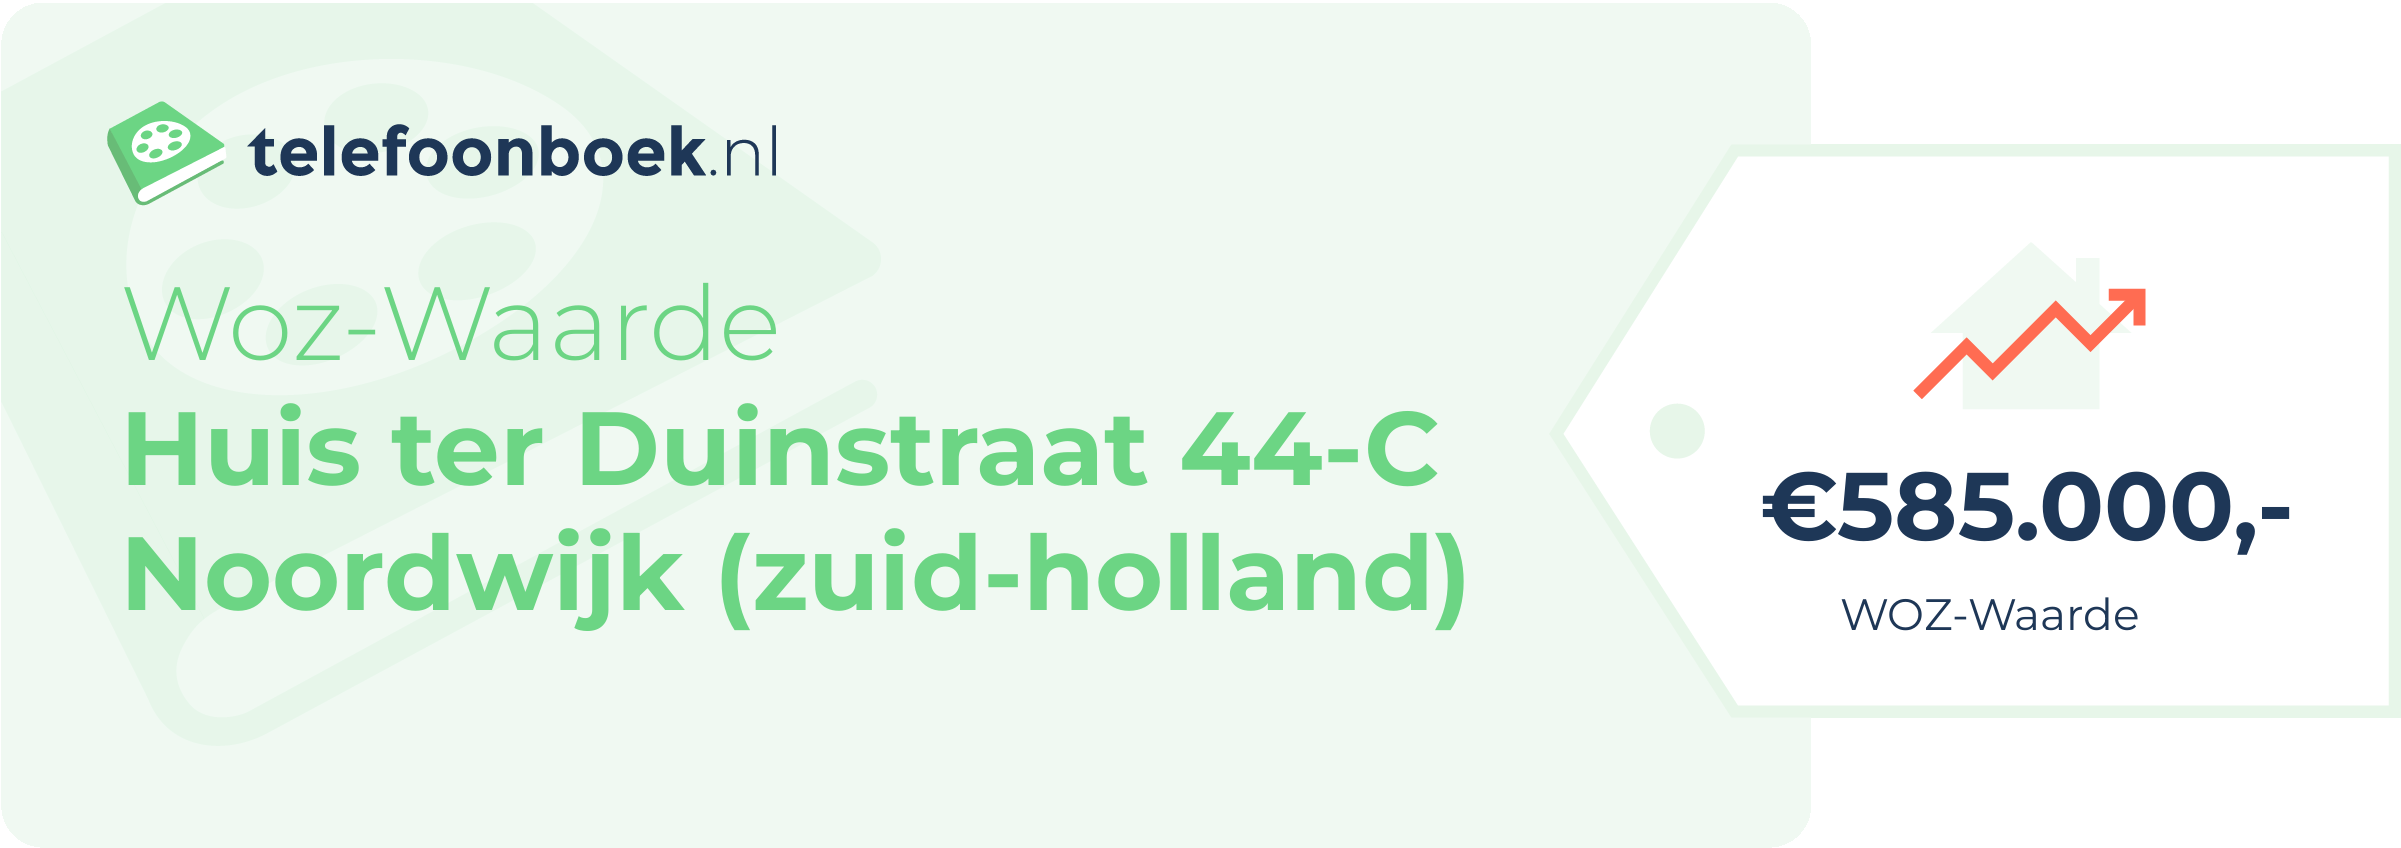 WOZ-waarde Huis Ter Duinstraat 44-C Noordwijk (Zuid-Holland)